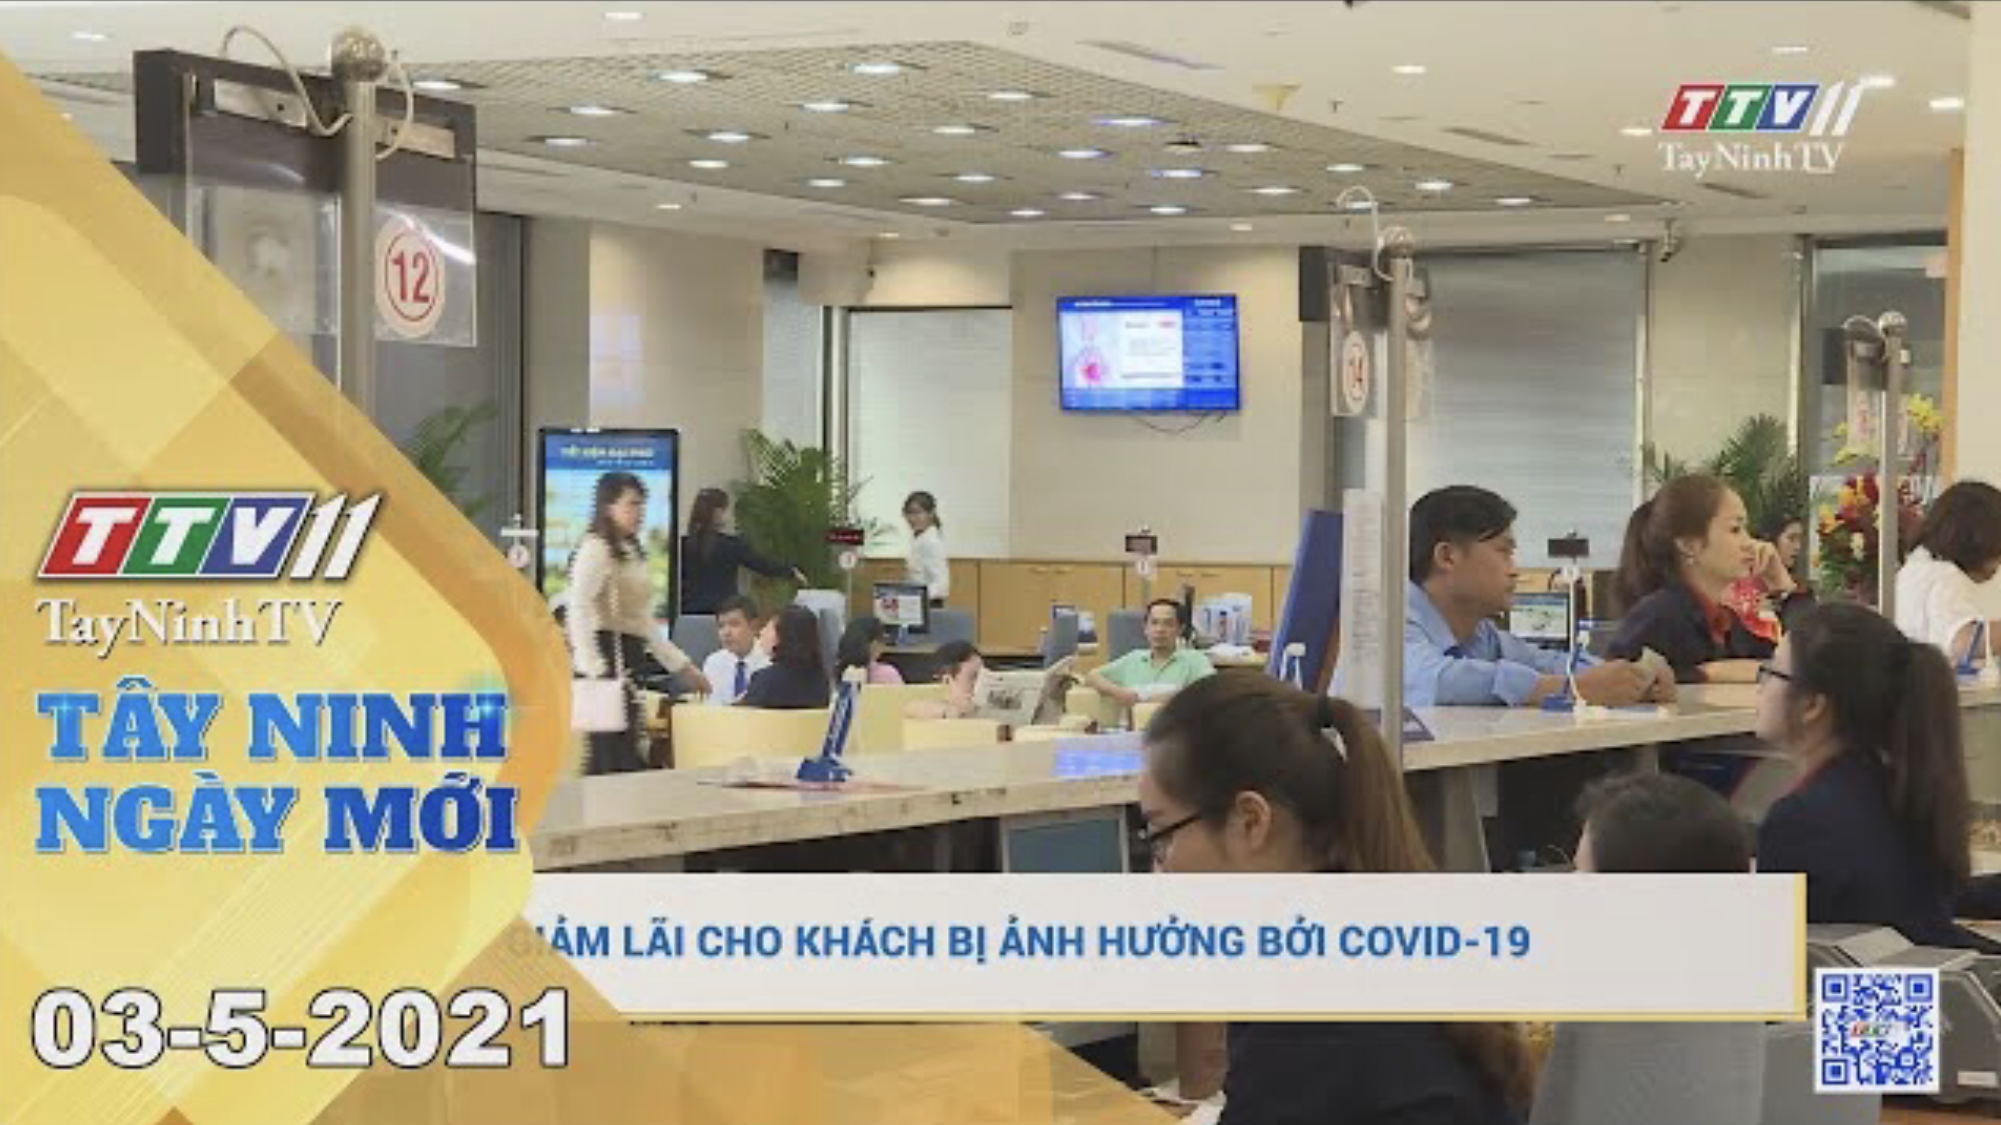 Tây Ninh Ngày Mới 03-5-2021 | Tin tức hôm nay | TayNinhTV